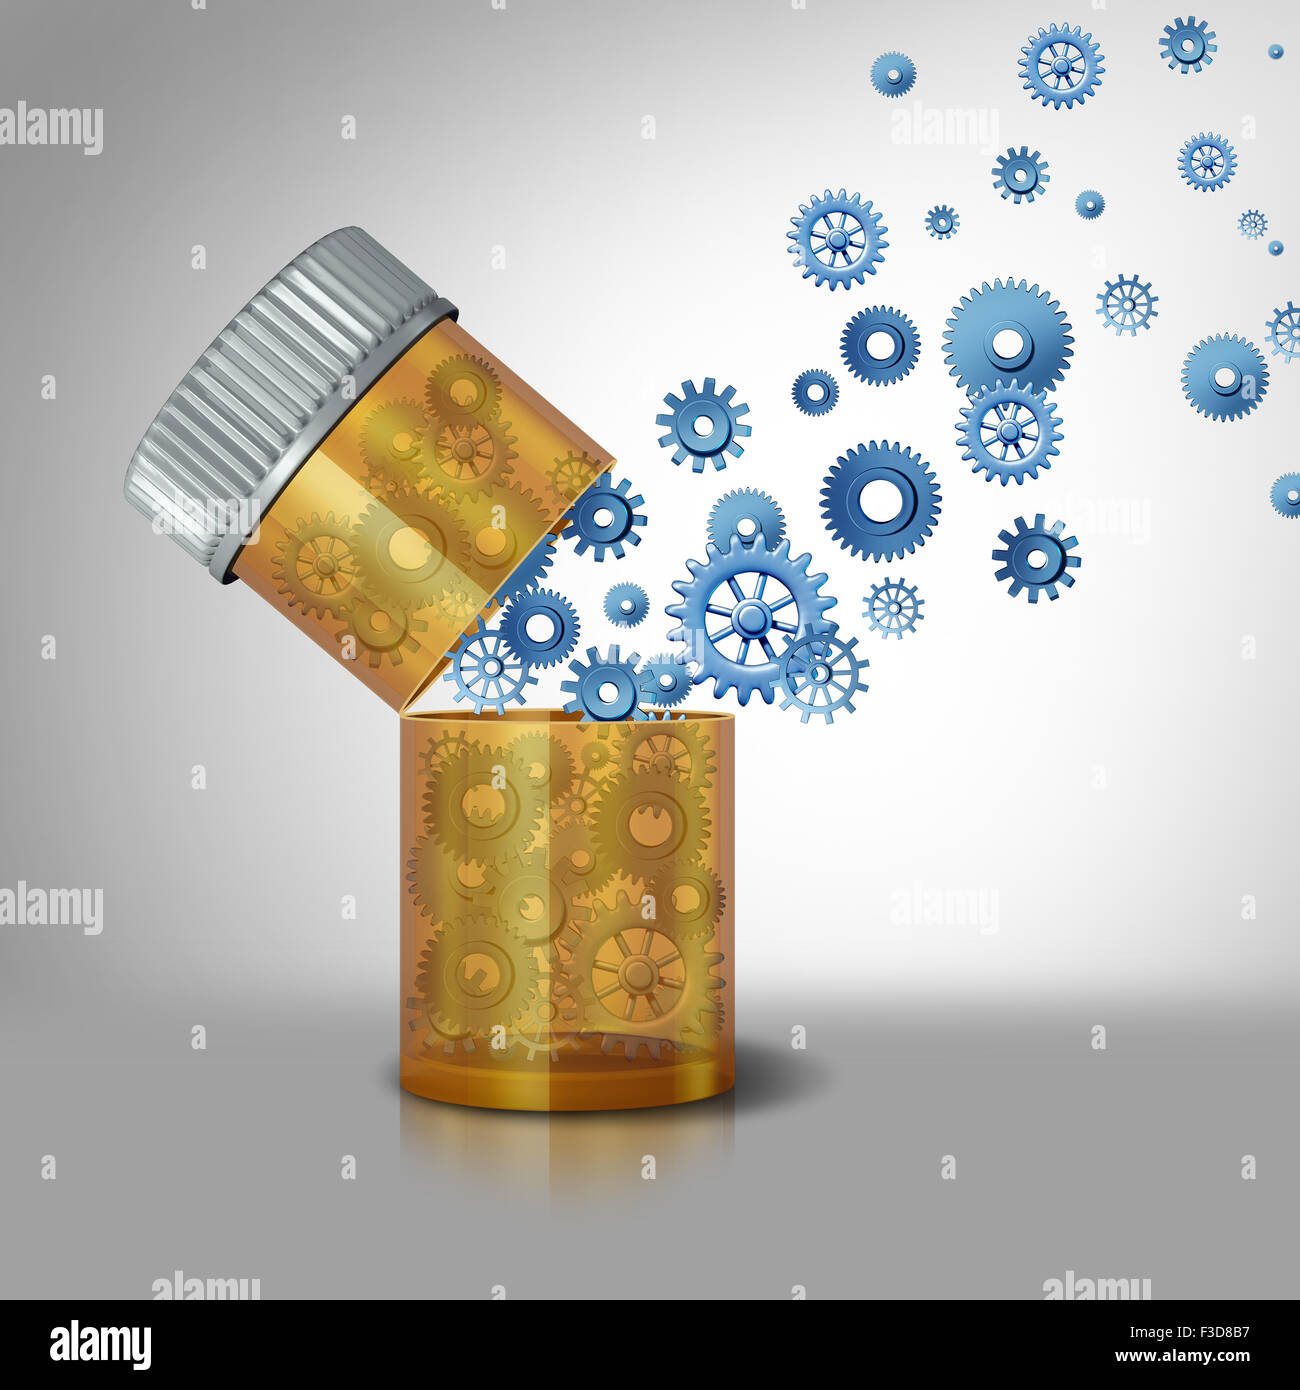 Concepto de la industria farmacéutica y el negocio de drogas precription símbolo como una píldora abierto botella con engranajes y ruedas dentadas que fluye como una metáfora de la medicación y los funcionamientos internos de medicina. Foto de stock